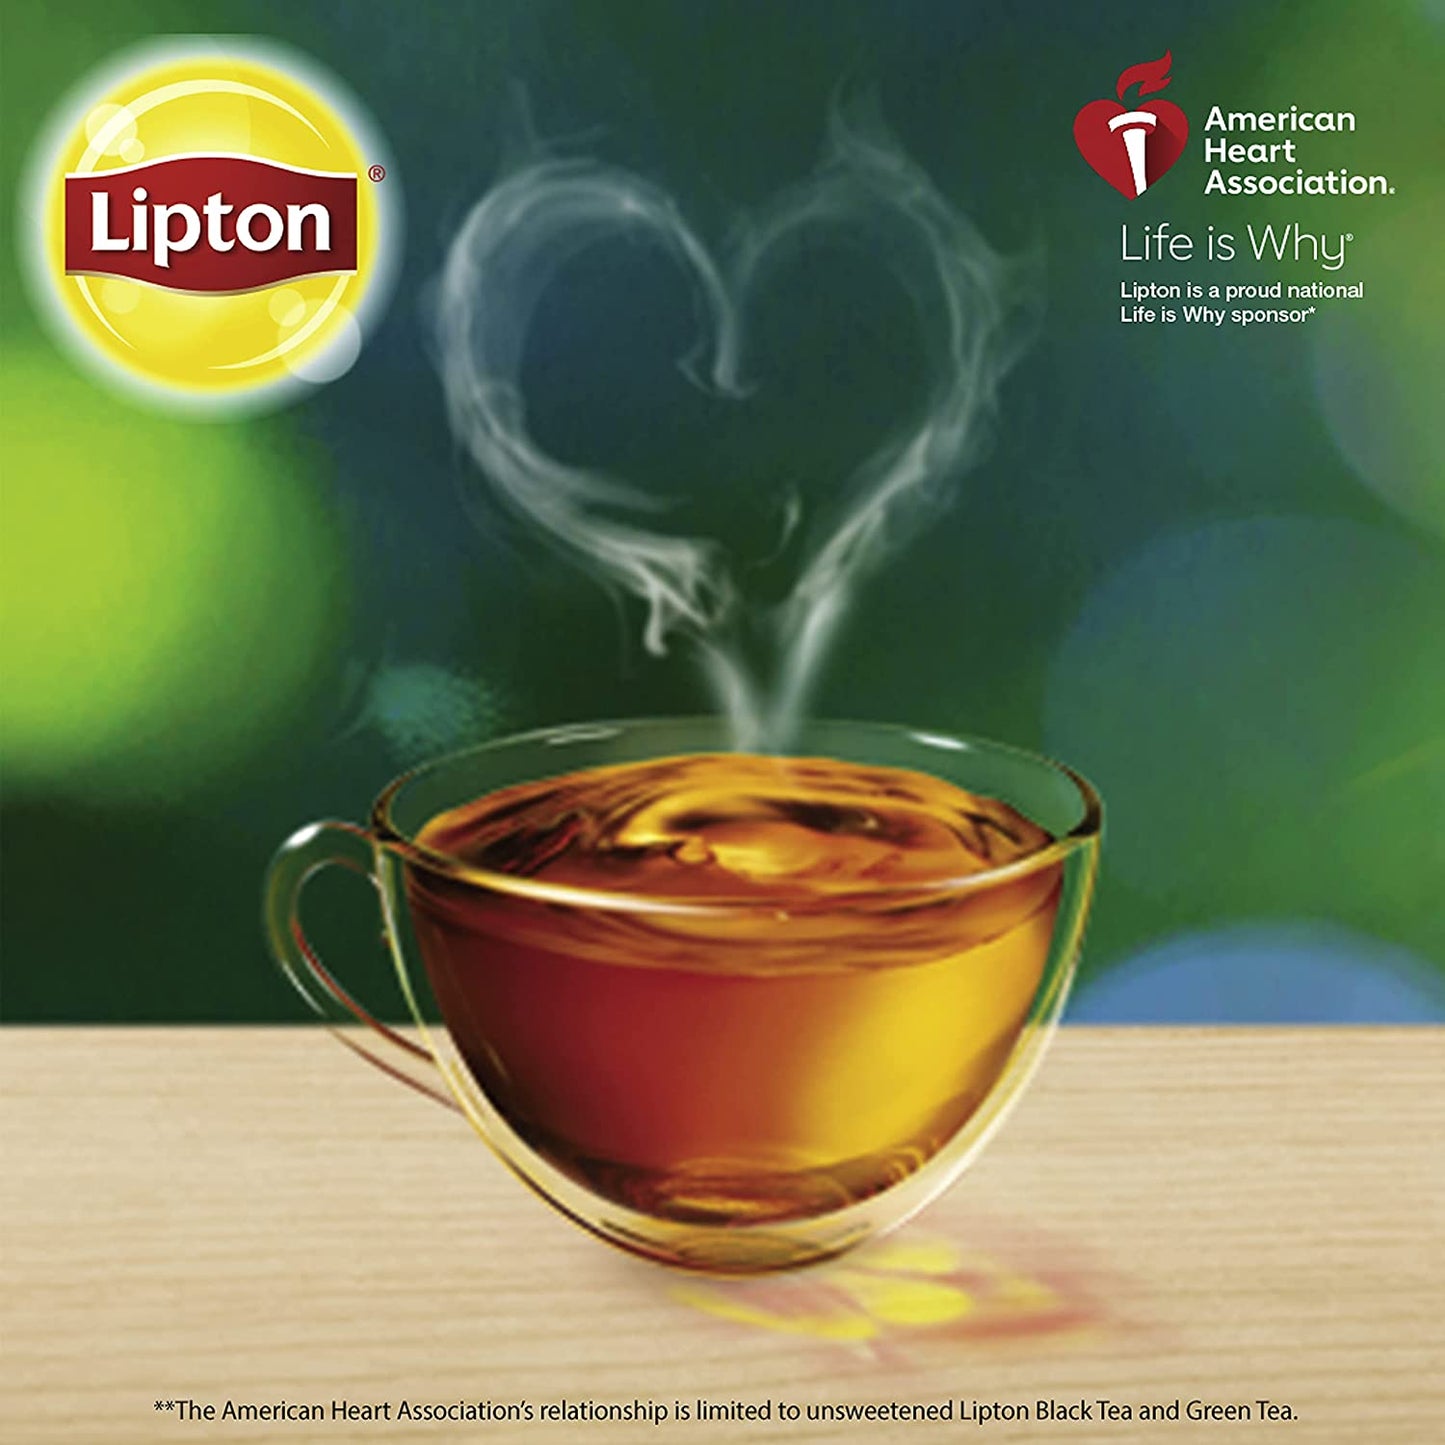 lipton tea ads